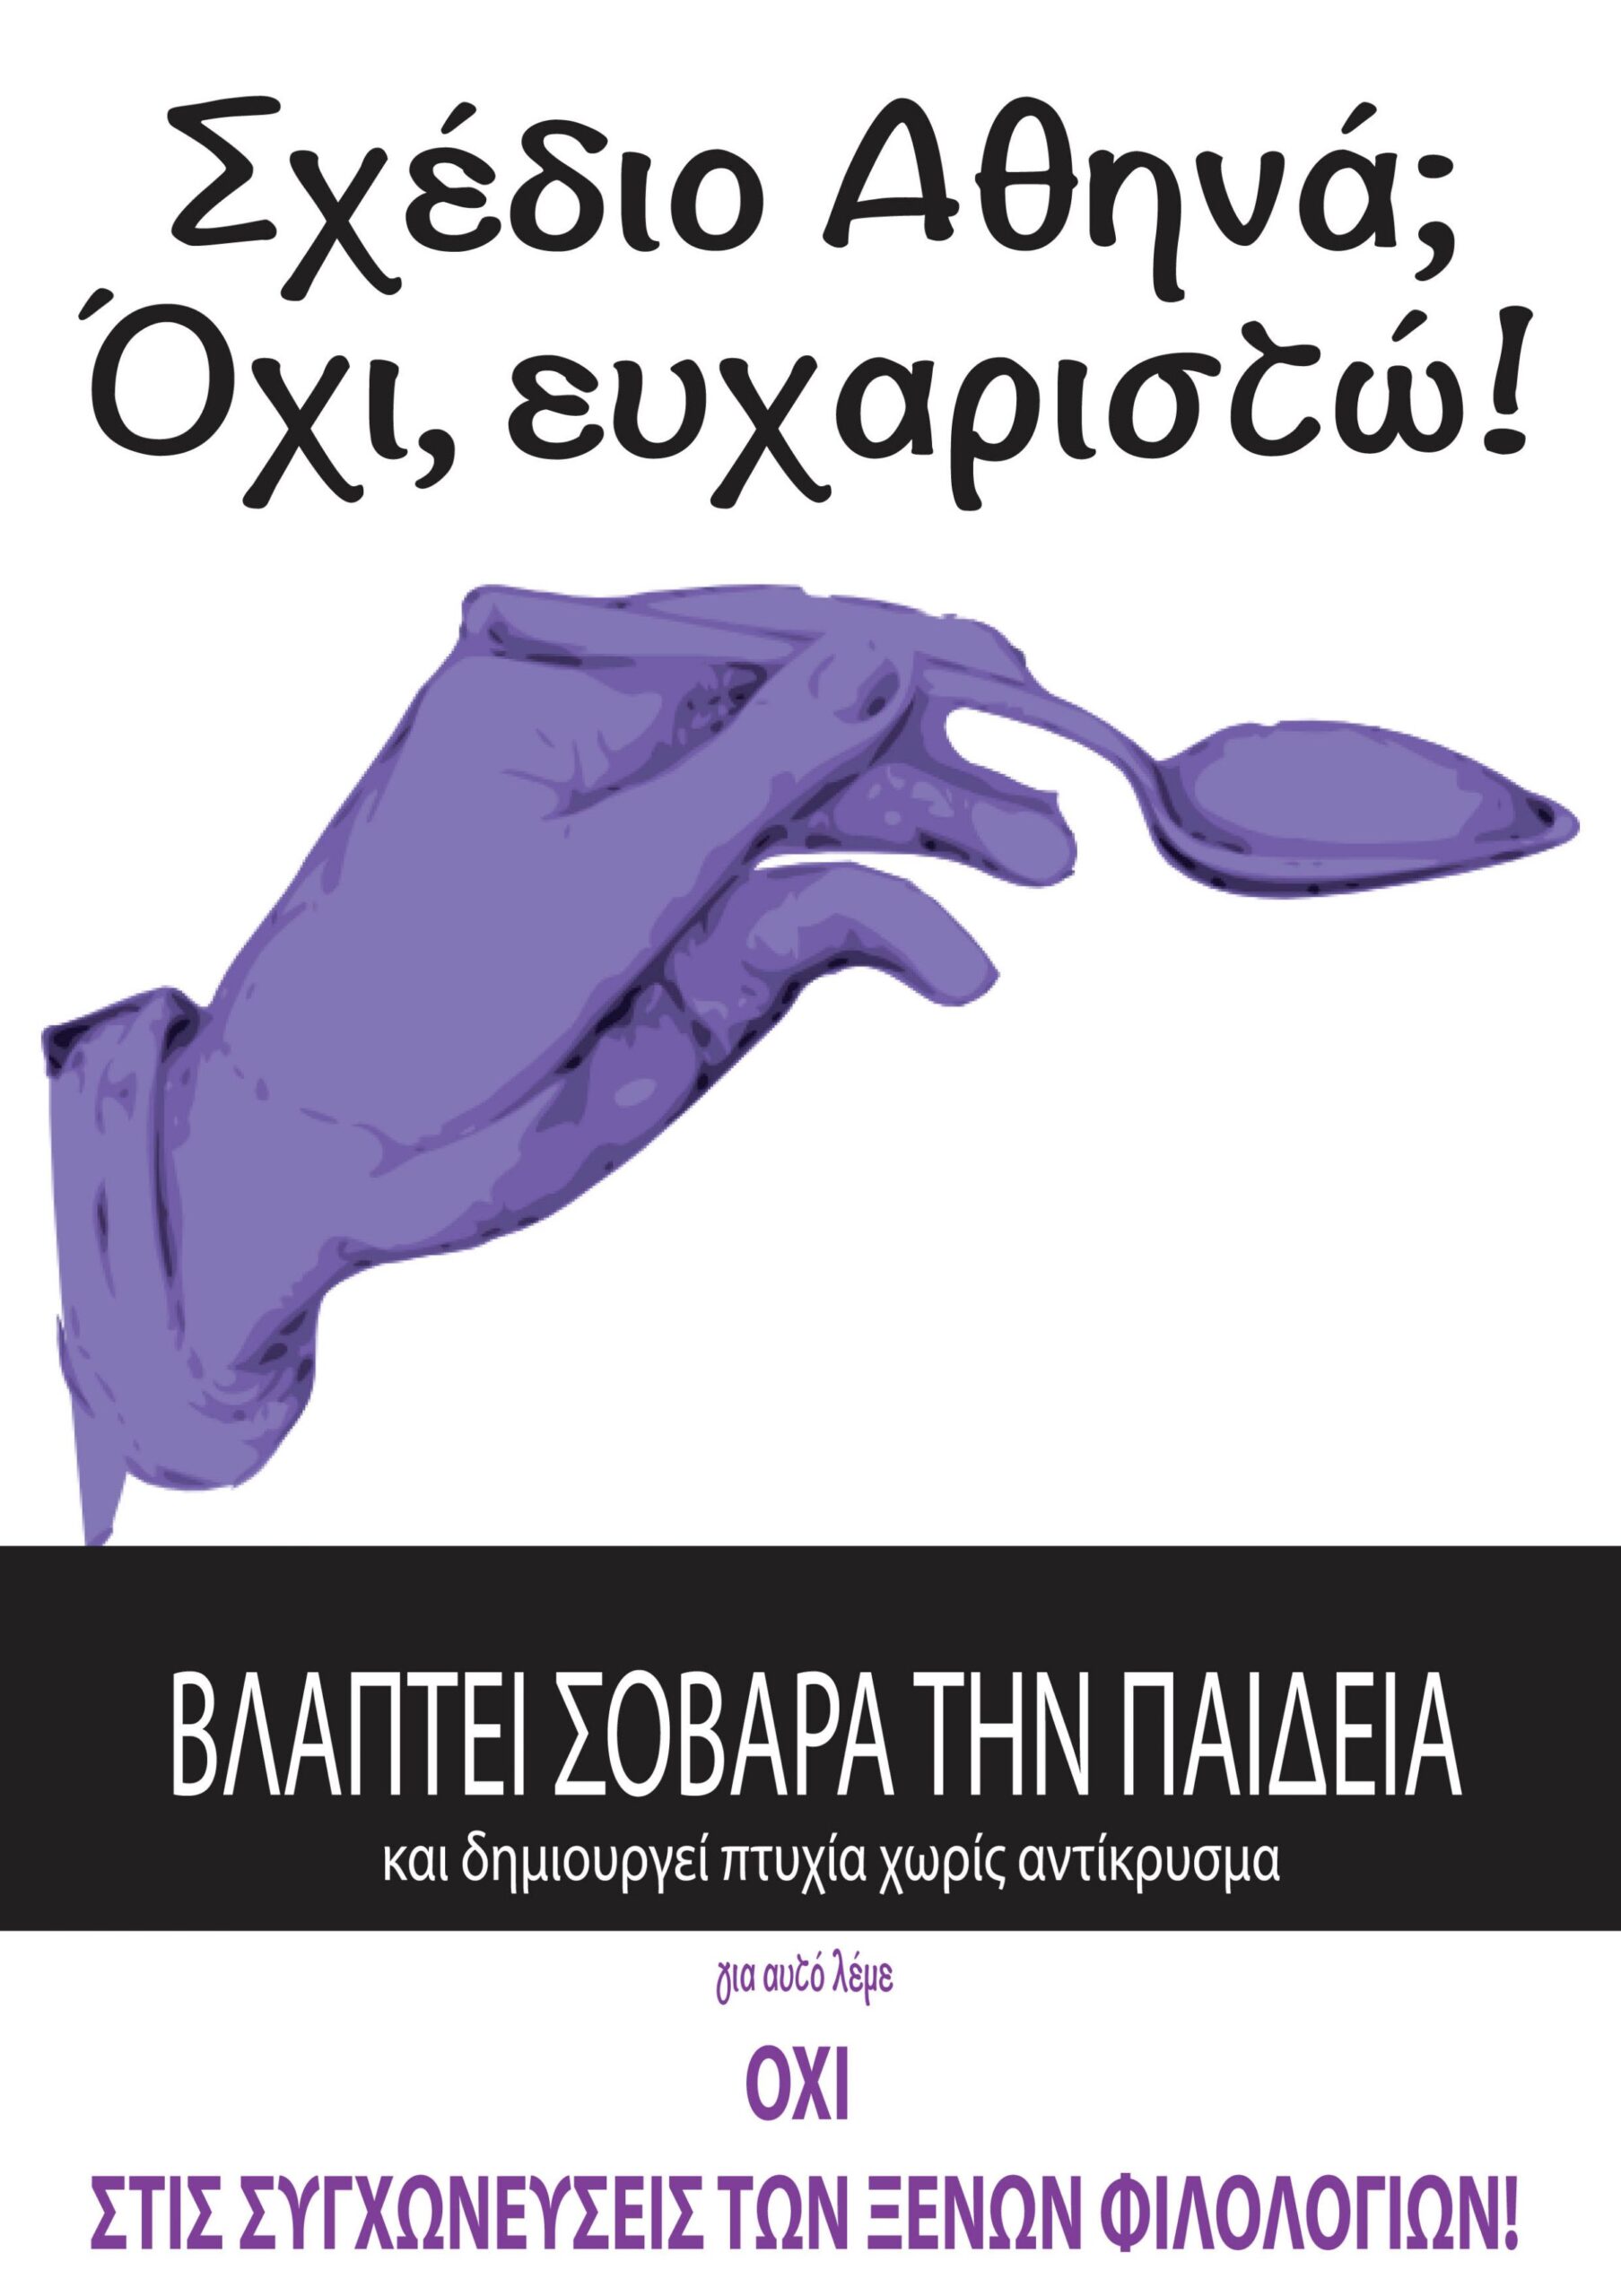 Ανοικτή διαβούλευση του ΣΥΡΙΖΑ-ΕΚΜ για το σχέδιο «Αθηνά» (11.03, αίθ. Γερουσίας)